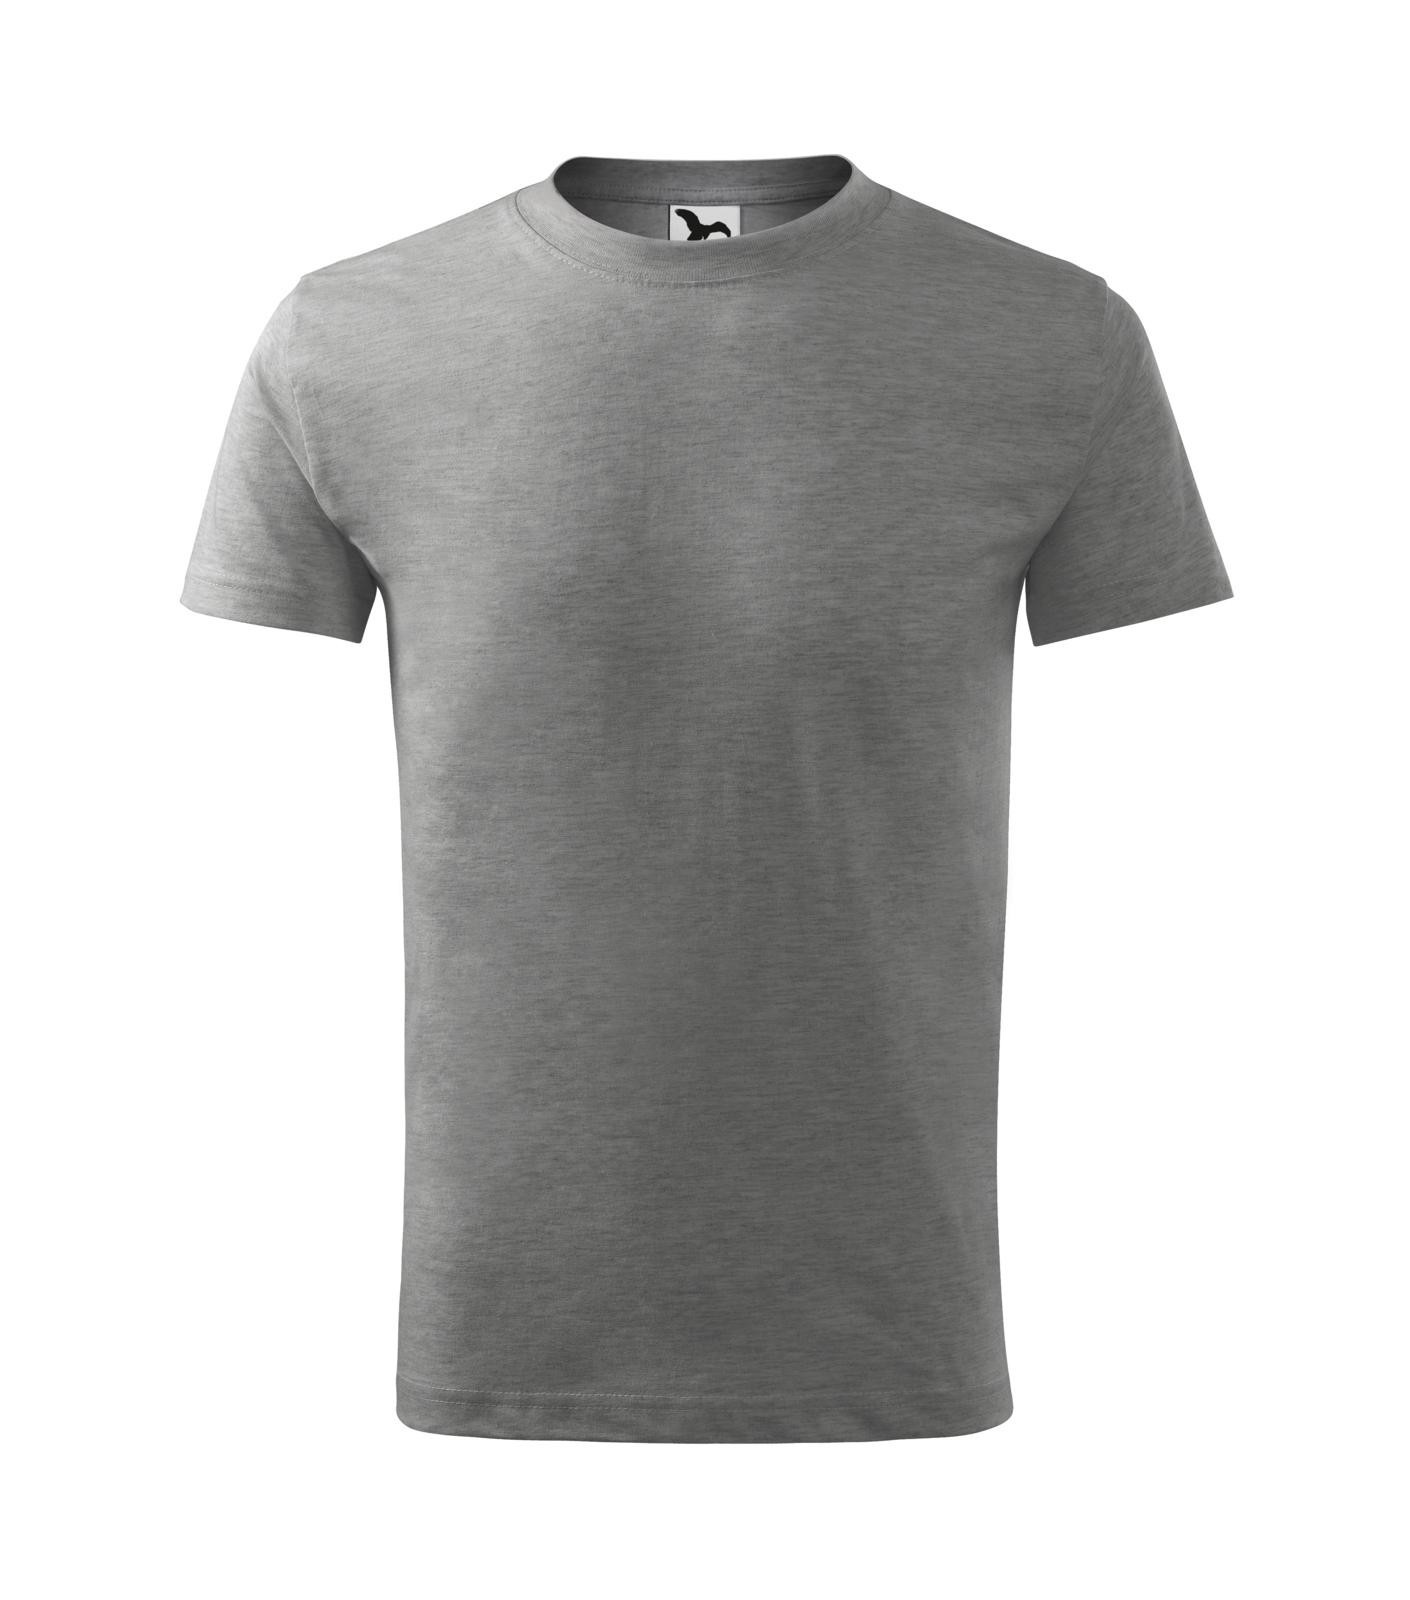 Detské tričko Malfini Basic 138 - veľkosť: 134, farba: tmavosivý melír